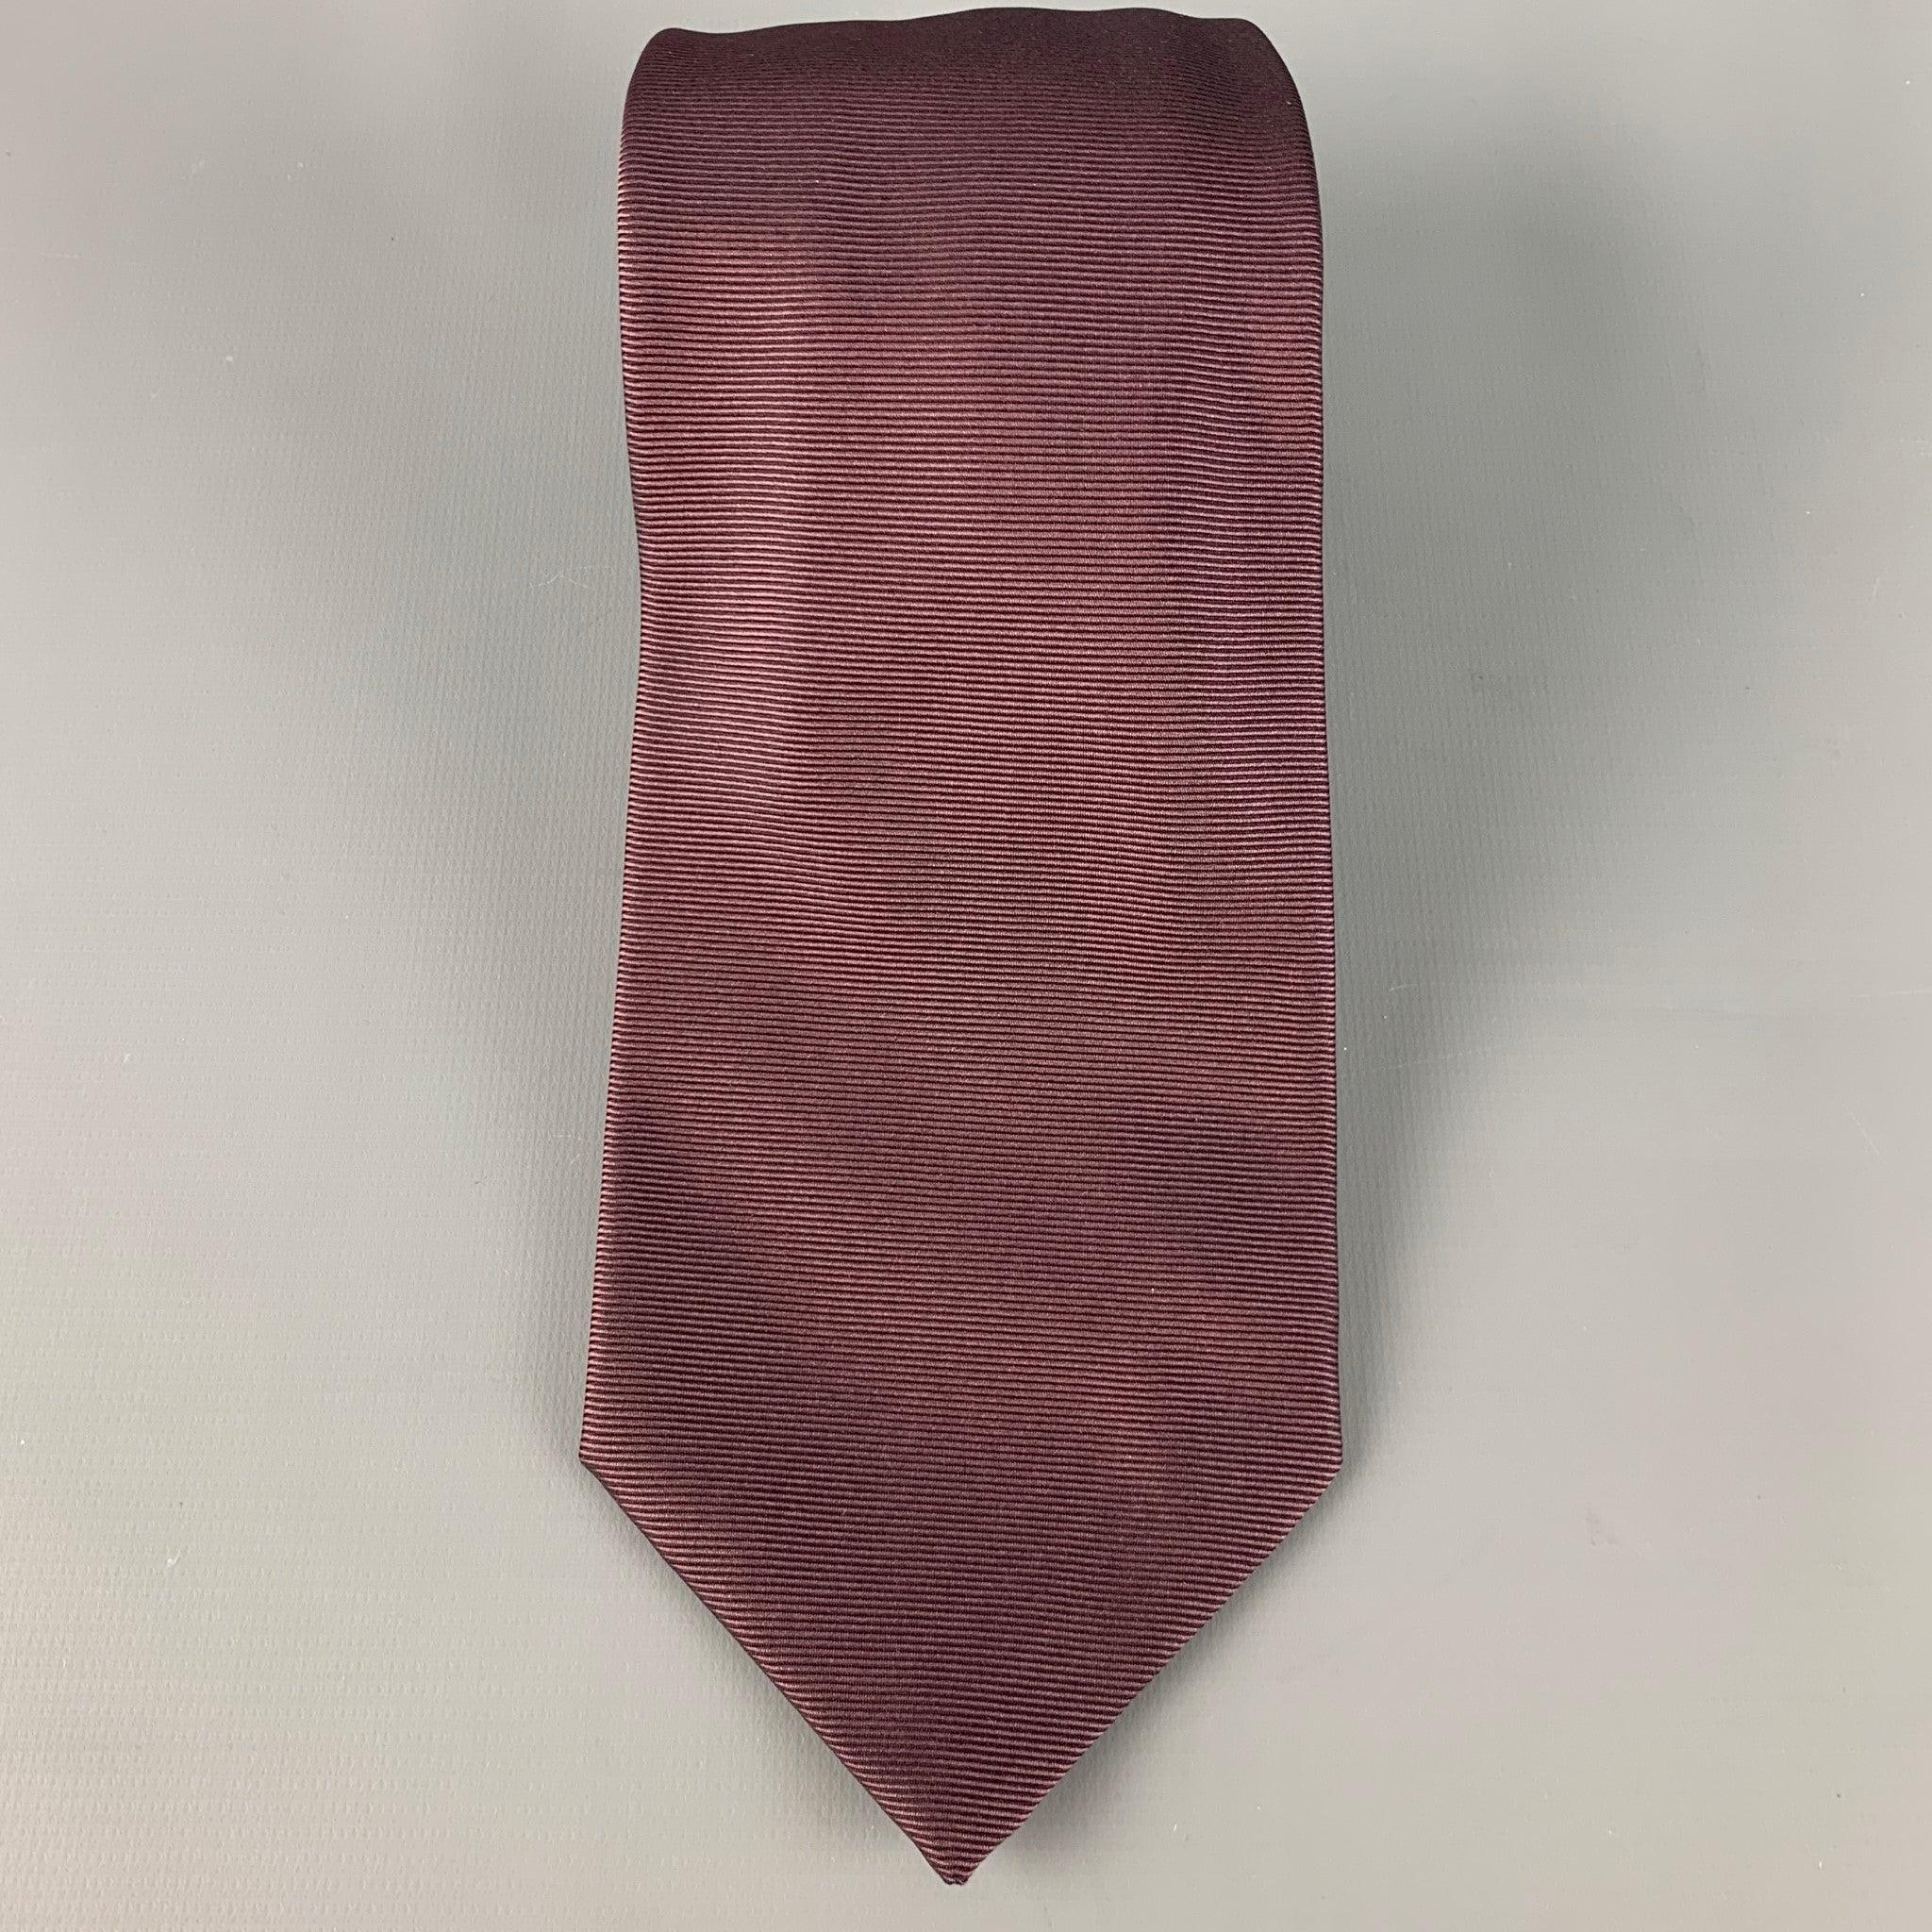 ENRICO ISAIA
Krawatte aus braunem Seidenköper. Handgefertigt in Italien, sehr guter gebrauchter Zustand. 

Abmessungen: 
  Breite: 3,5 Zoll Länge: 60 Zoll 
  
  
 
Sui Generis-Referenz: 126558
Kategorie: Krawatte
Mehr Details
    
Marke: 